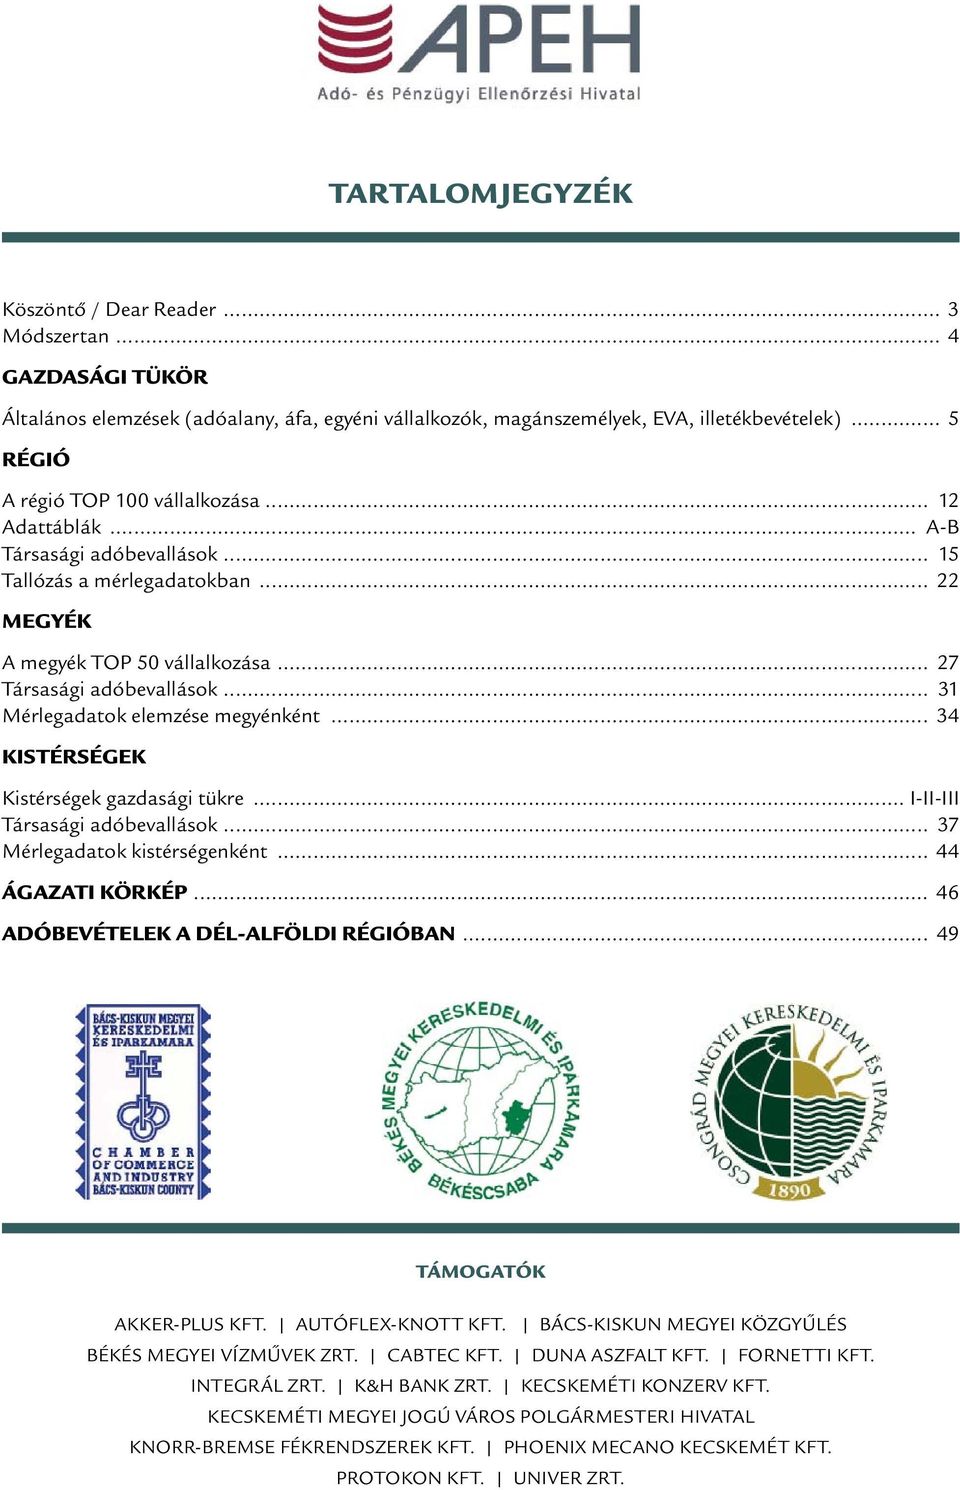 A DÉL-ALFÖLDI RÉGIÓT alkotó Bács-Kiskun, Békés és Csongrád megyében. A  2010-ES ÉVKÖNYV, immár hagyományosan, külön és részletesen is - PDF  Ingyenes letöltés